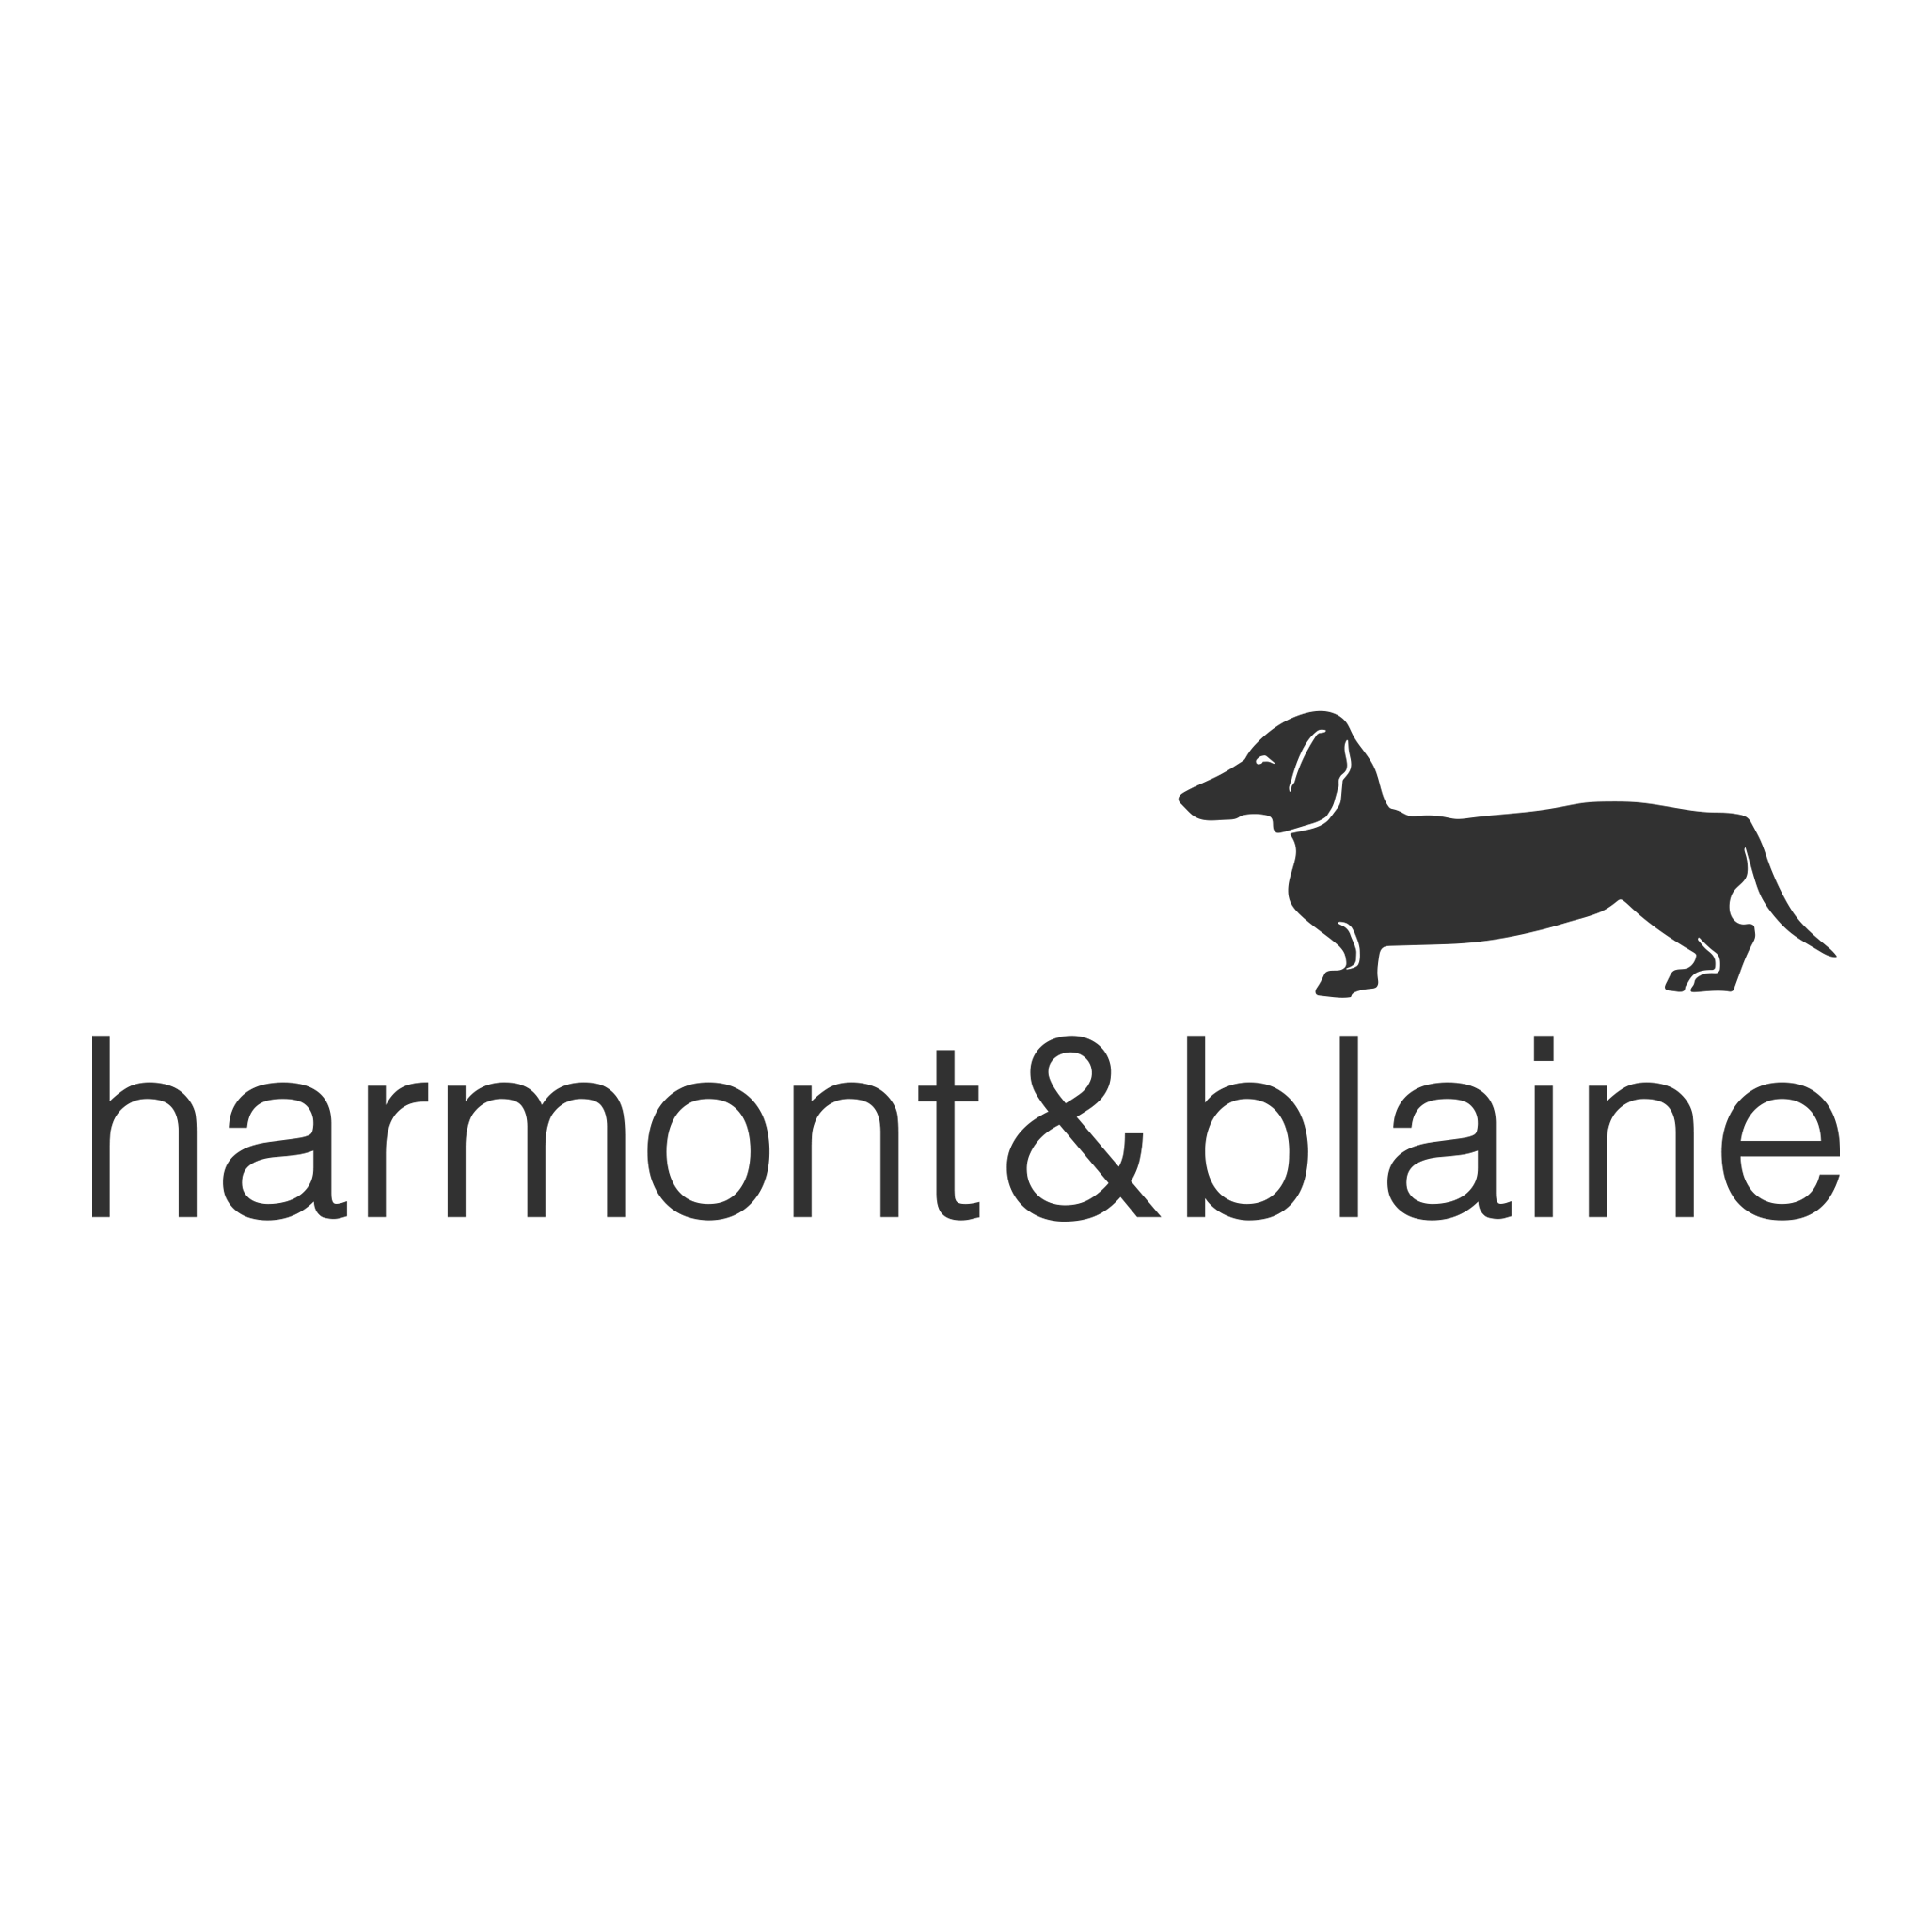 Harmont & Blaine